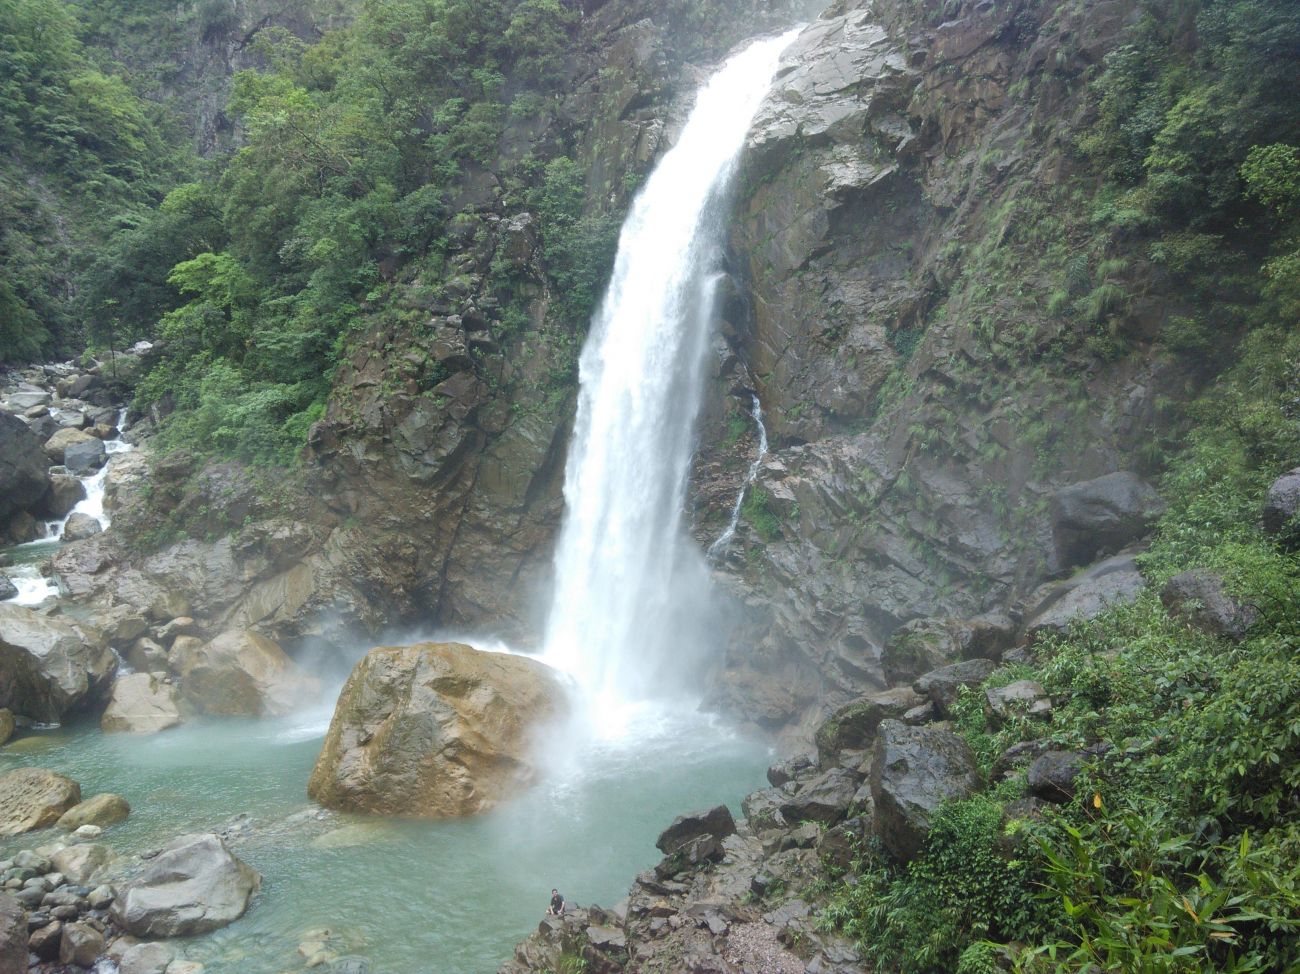 The Maswmai Falls